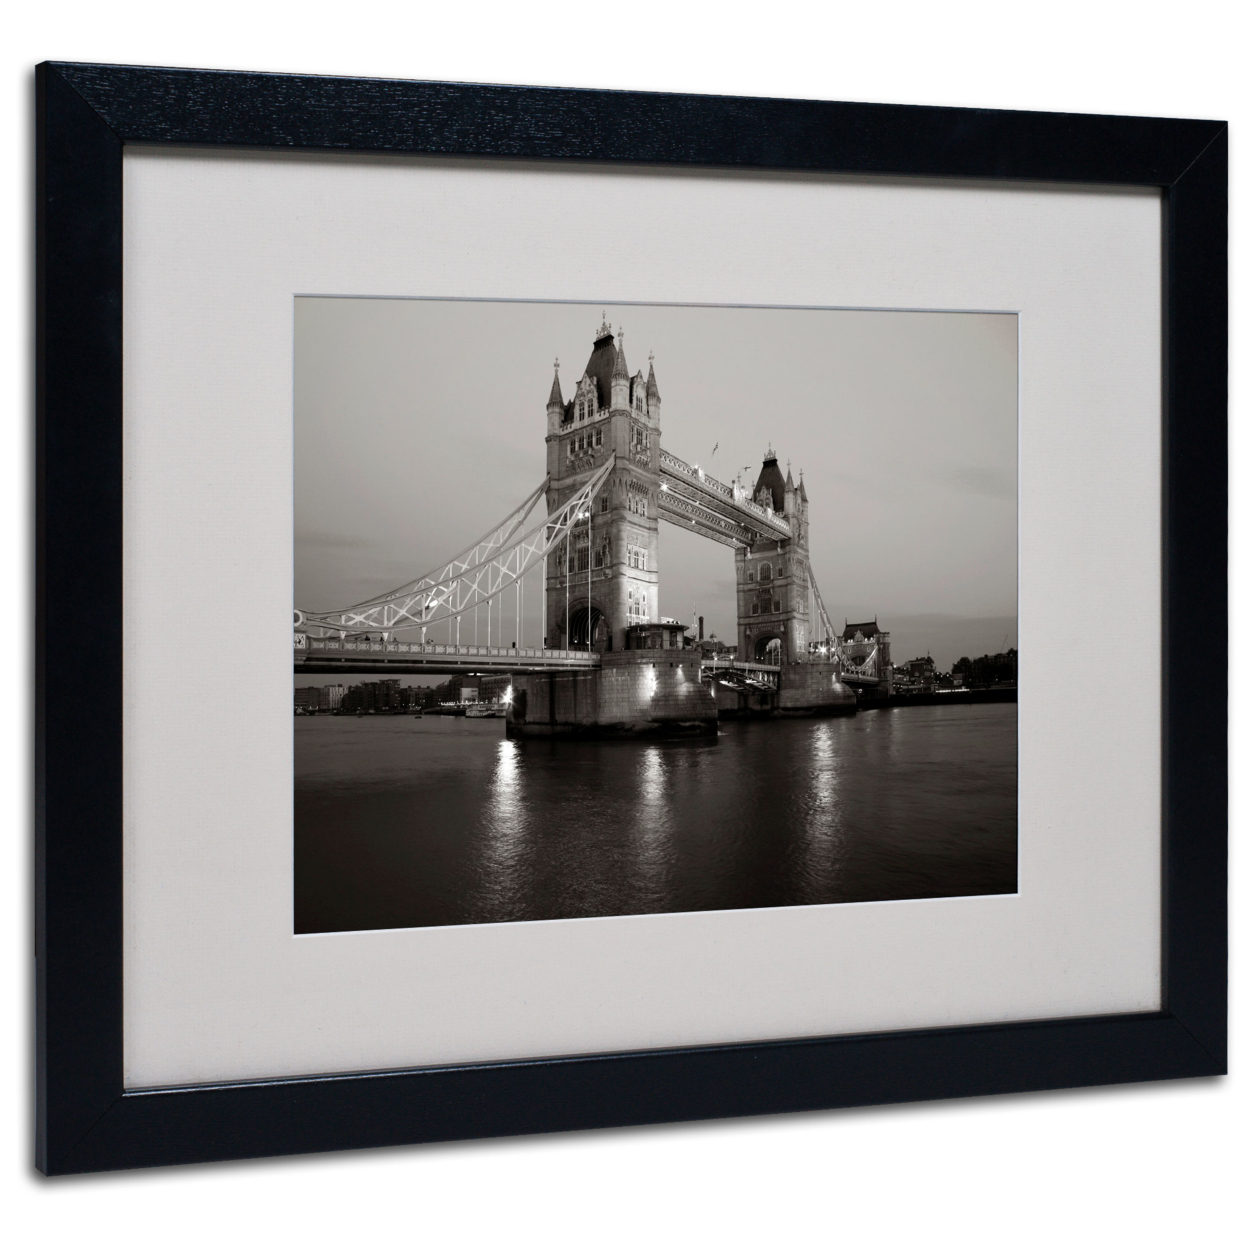 Chris Bliss 'Tower Bridge I' Black Wooden Framed Art 18 X 22 Inches